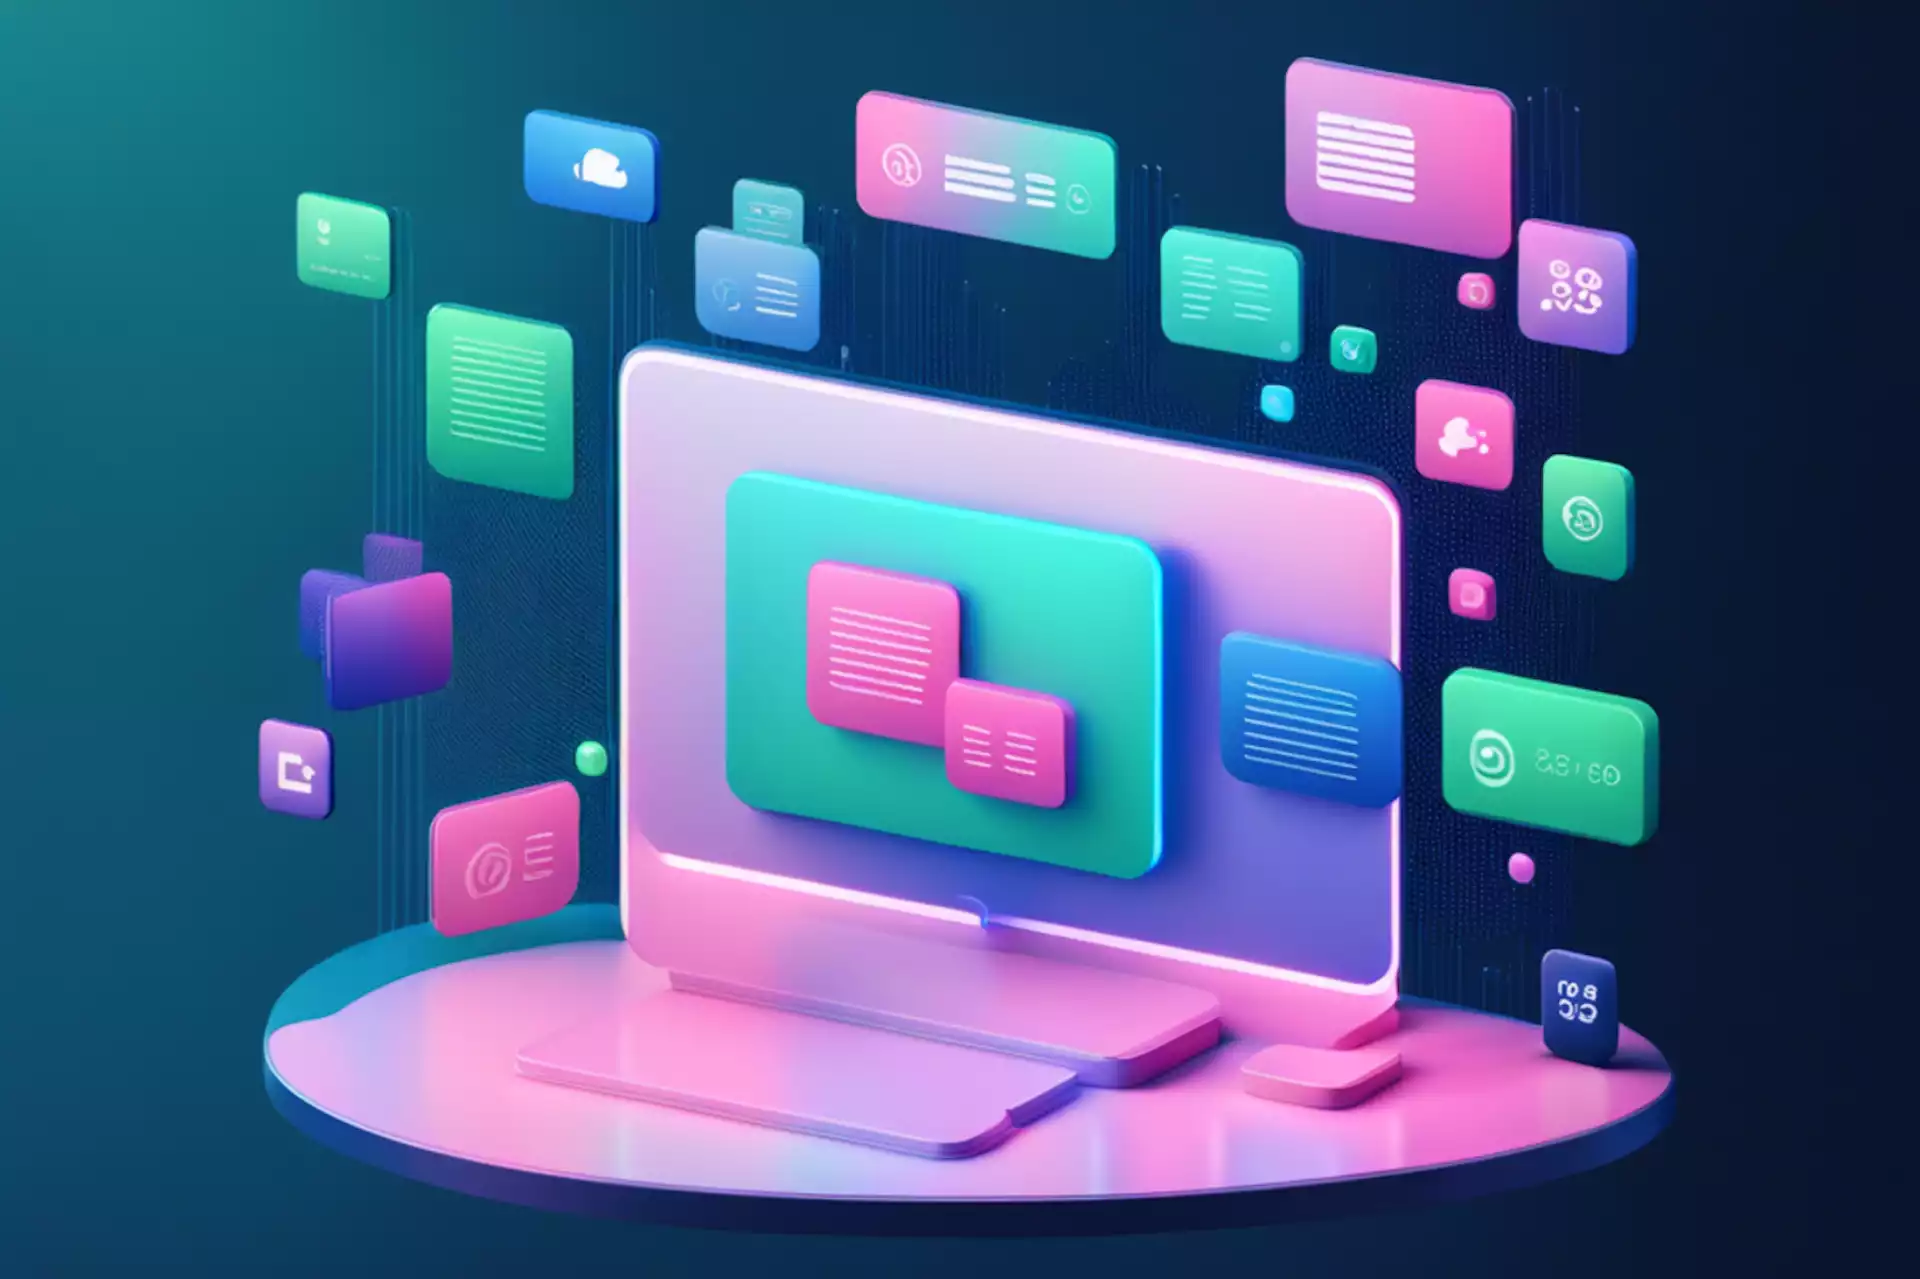 écran d'ordinateur en style neomorphisme rose, bleu et vert